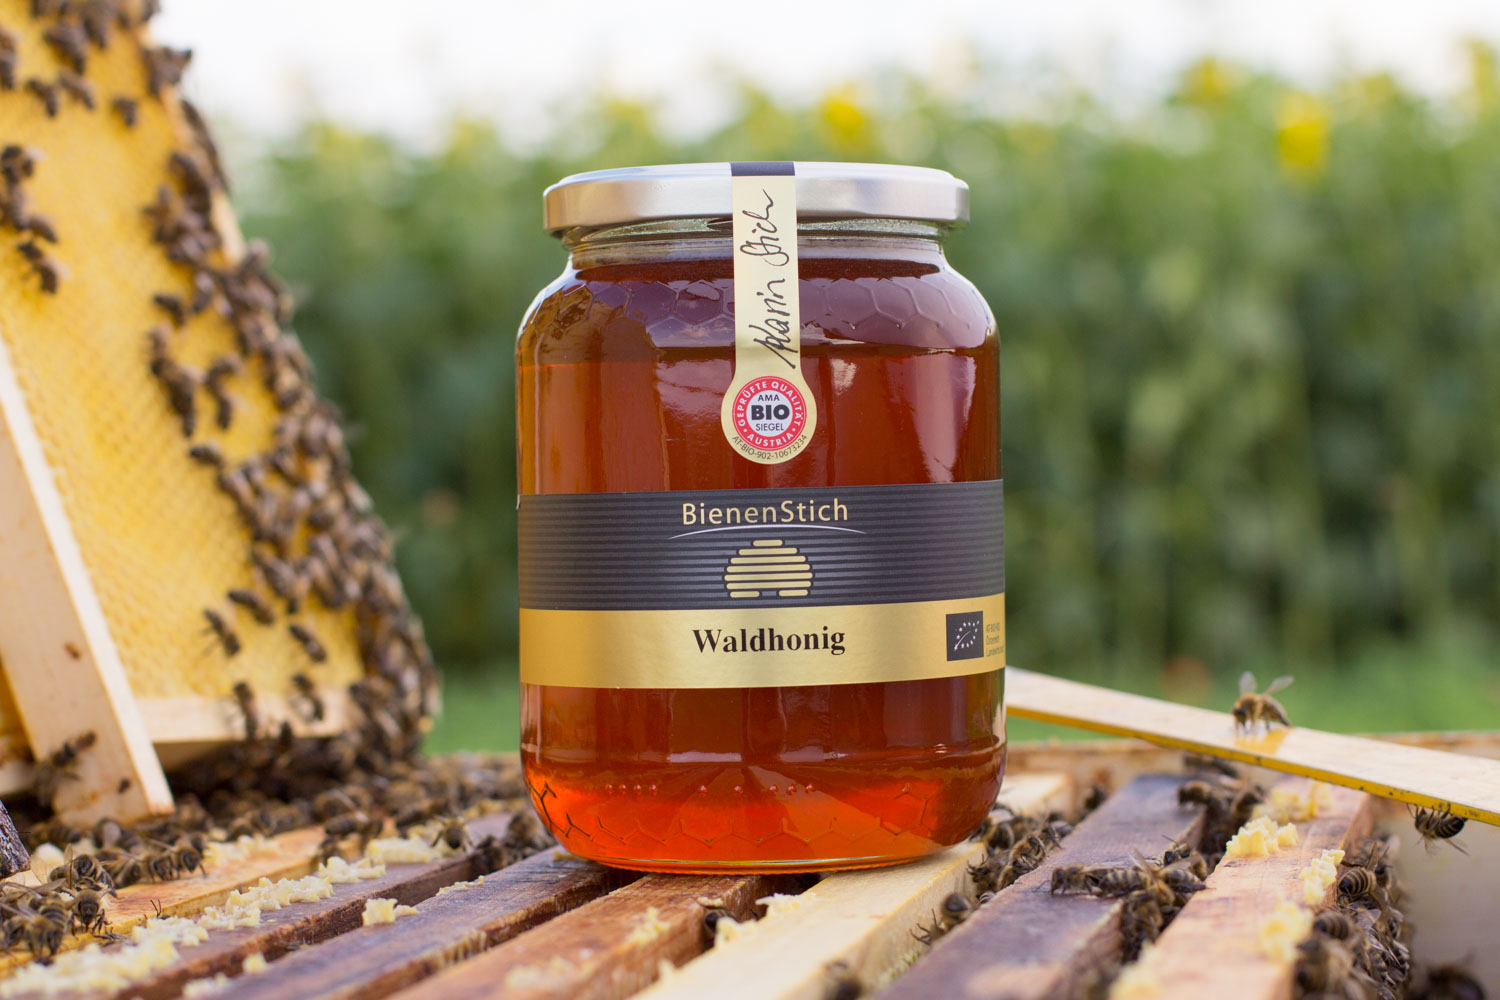 Waldhonig-1kg-Bienenstich-Honig-biologisch-bio-Waldhonig-Blütenhonig-Österreich-Wien-Manhartsbrunn-Familie-Stich-Imker-Imkerei-Produktfoto-Biene-1